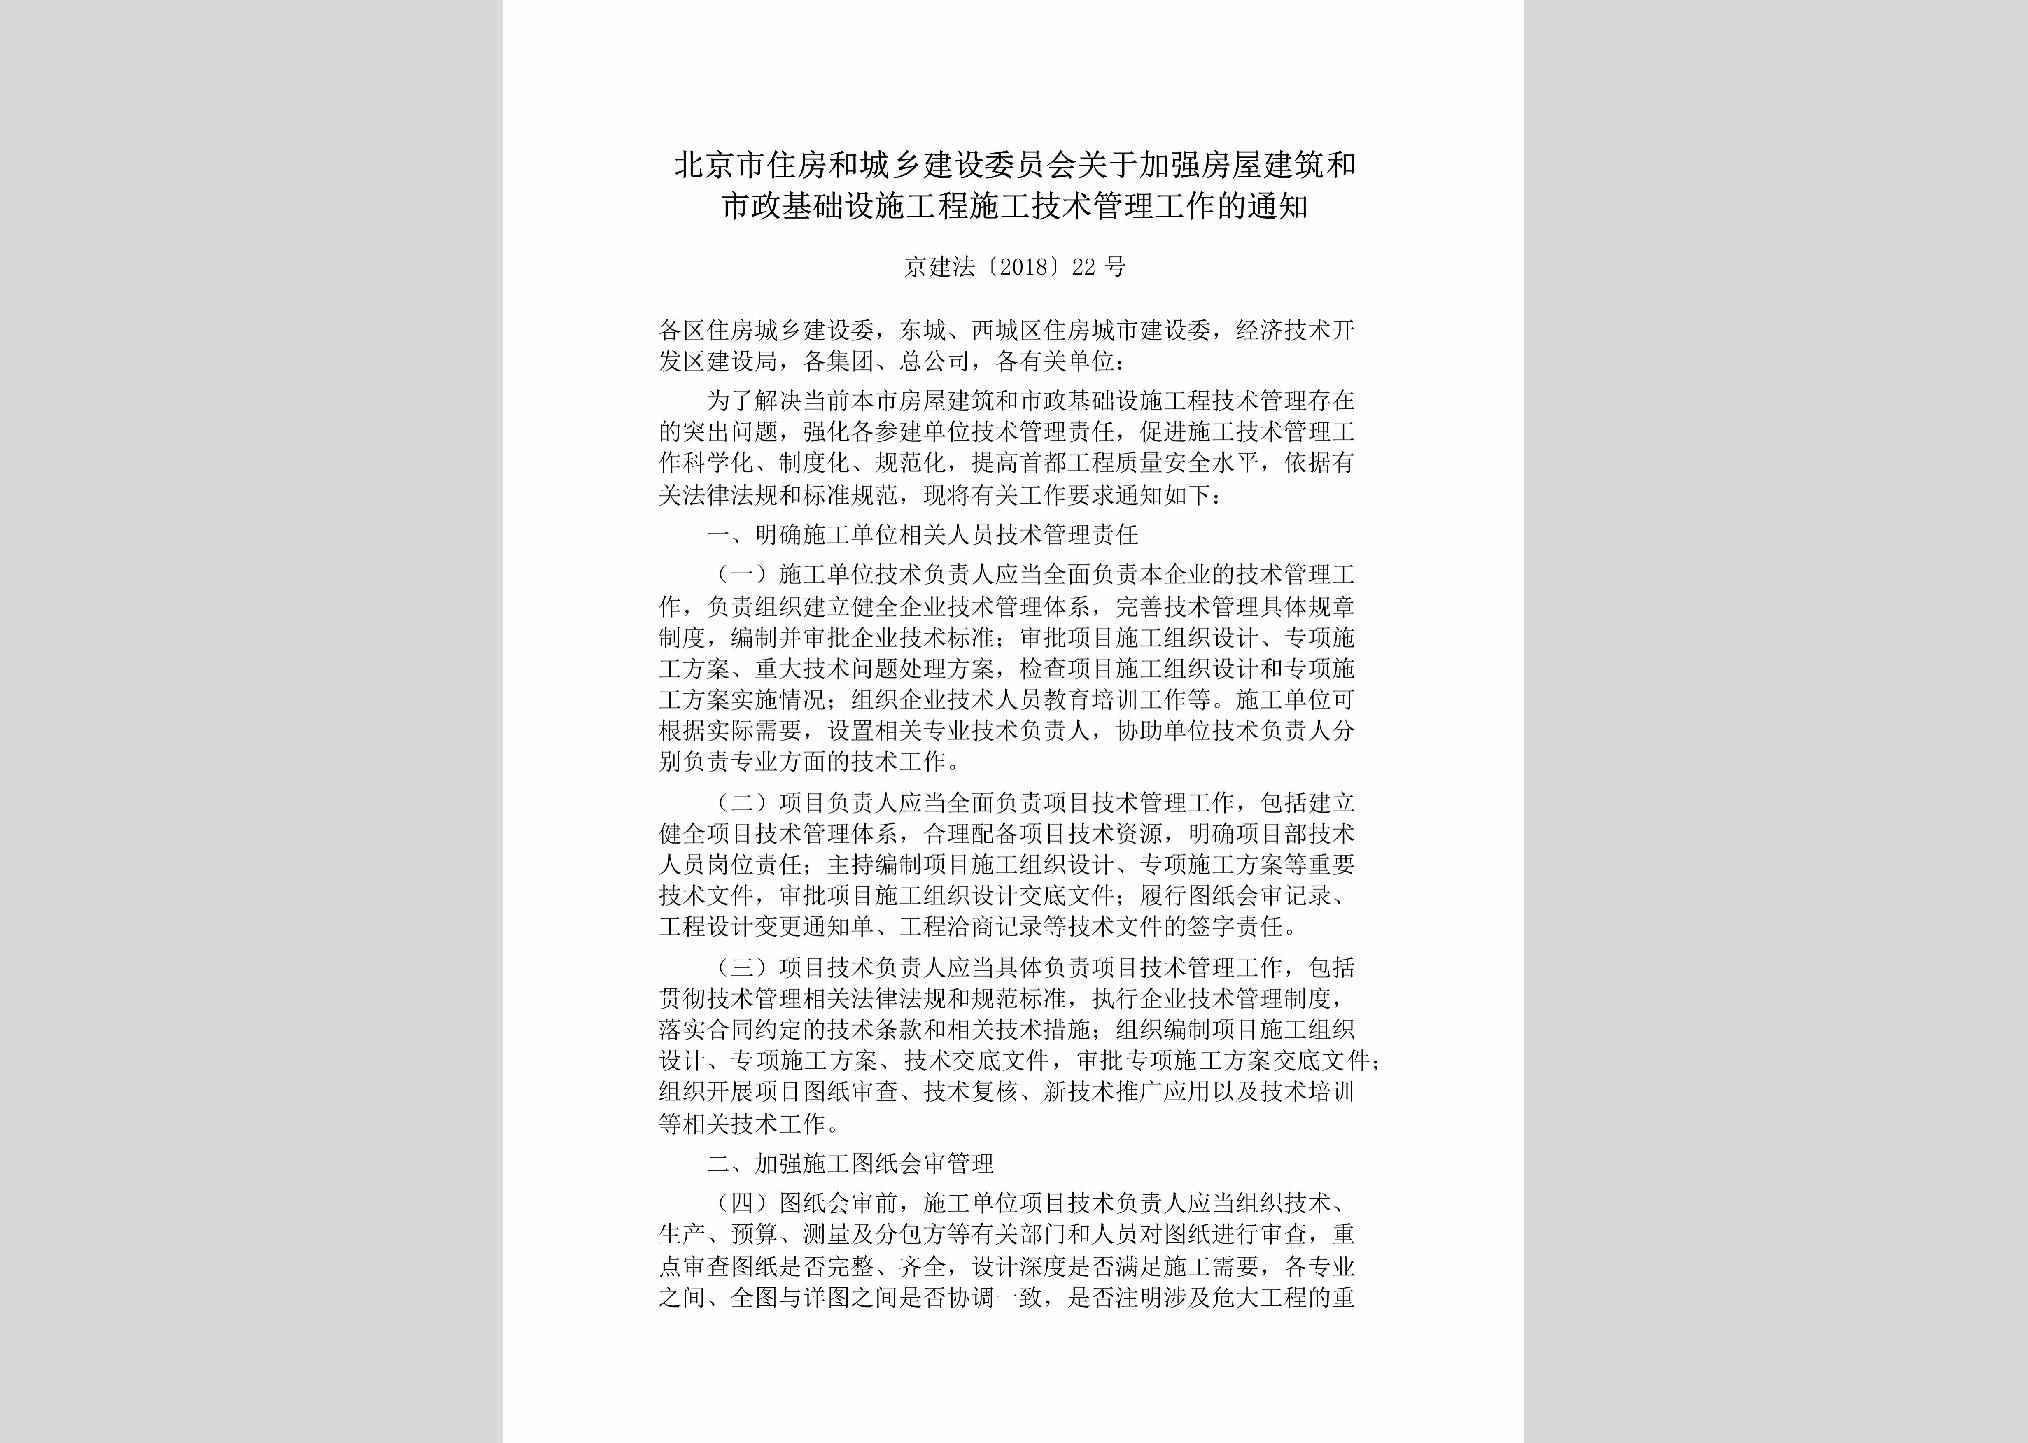 京建法[2018]22号：北京市住房和城乡建设委员会关于加强房屋建筑和市政基础设施工程施工技术管理工作的通知